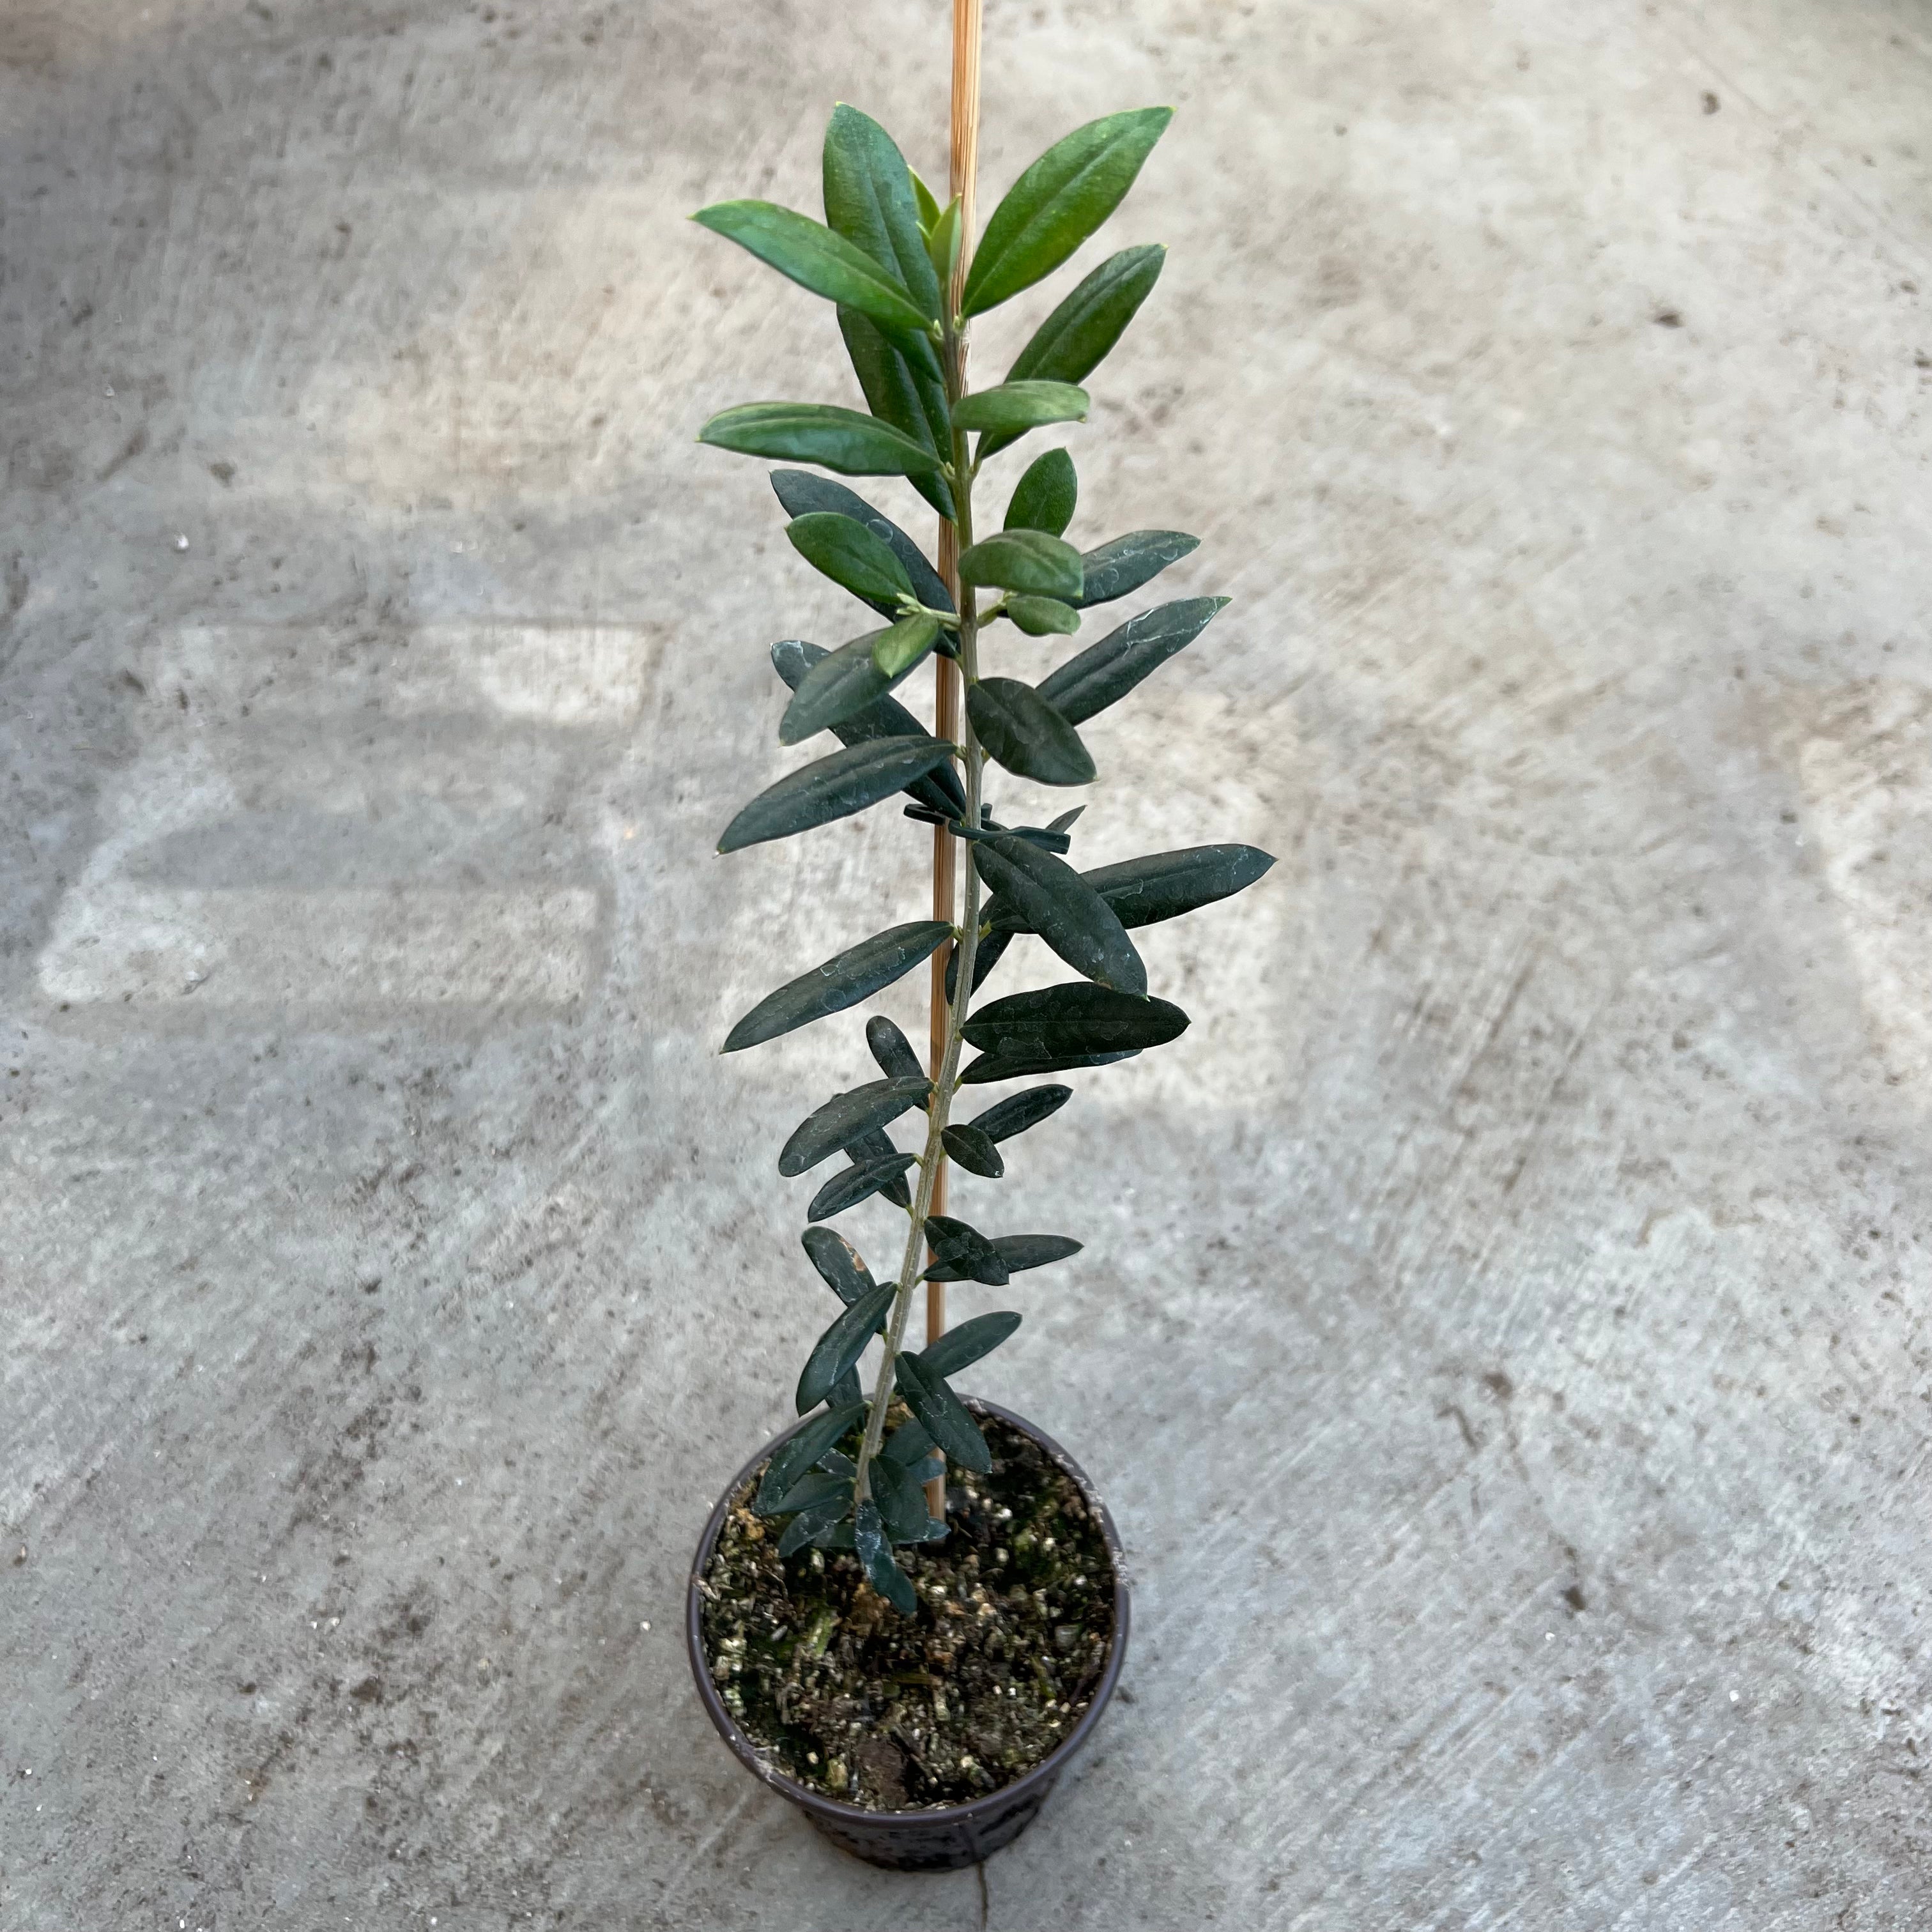 Olea europaea 'Arbequina' (Olive tree)